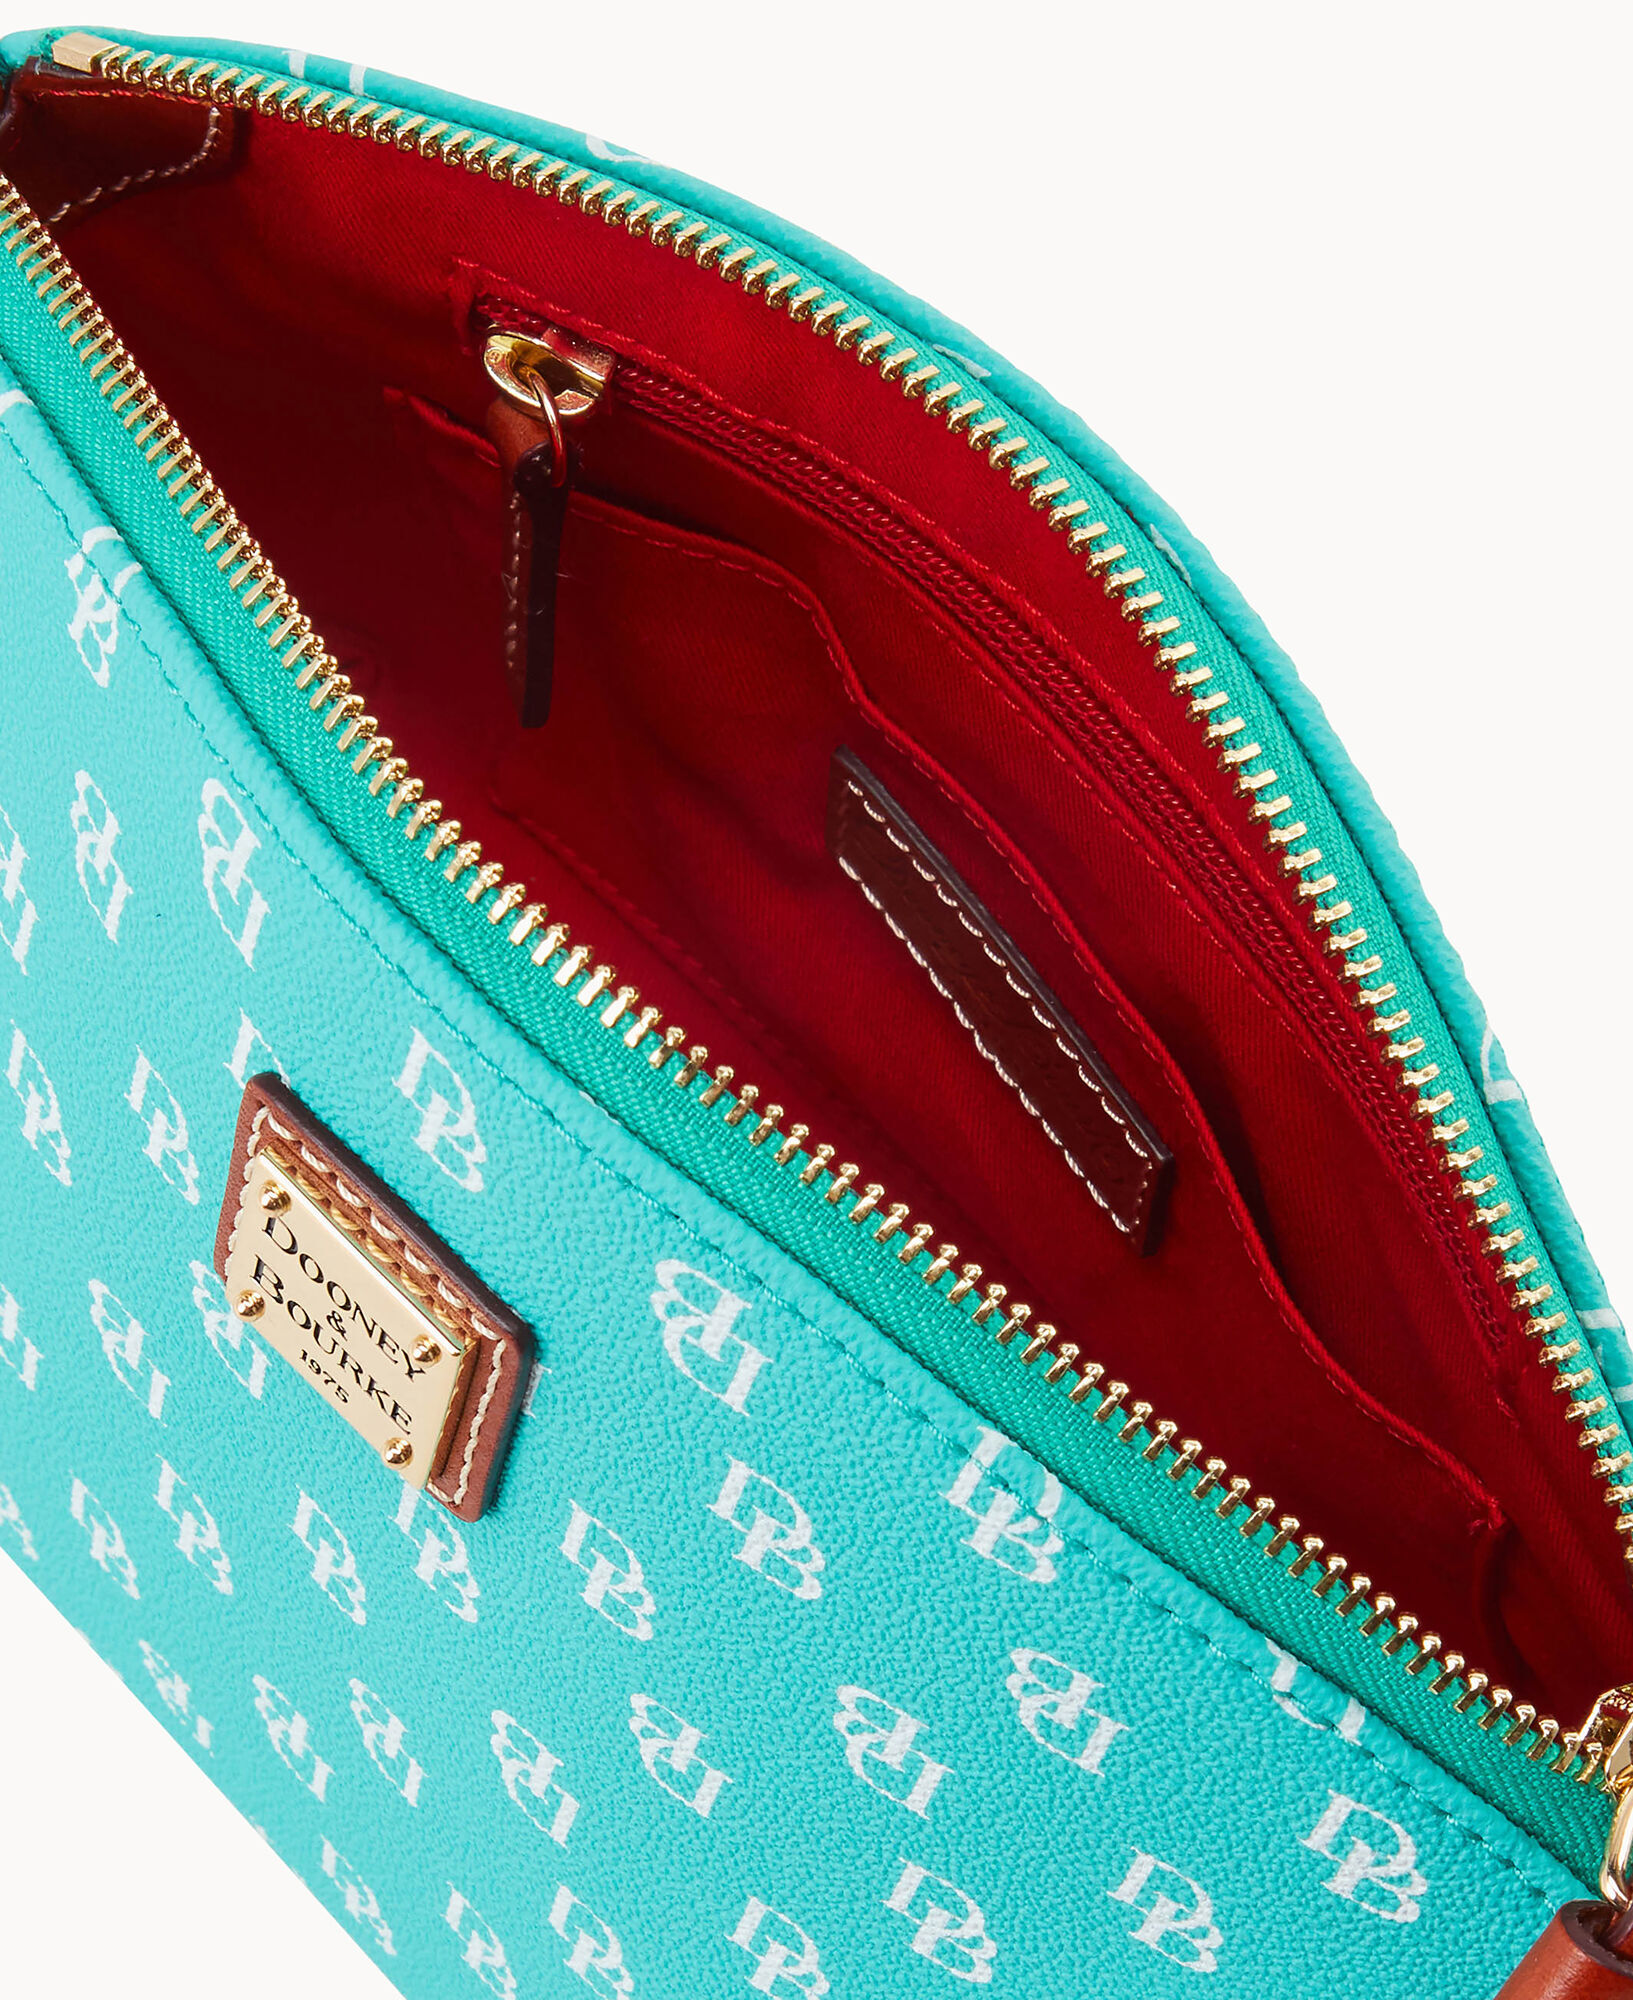 Dooney & Bourke Gretta Tote Handbags Seafoam : One Size